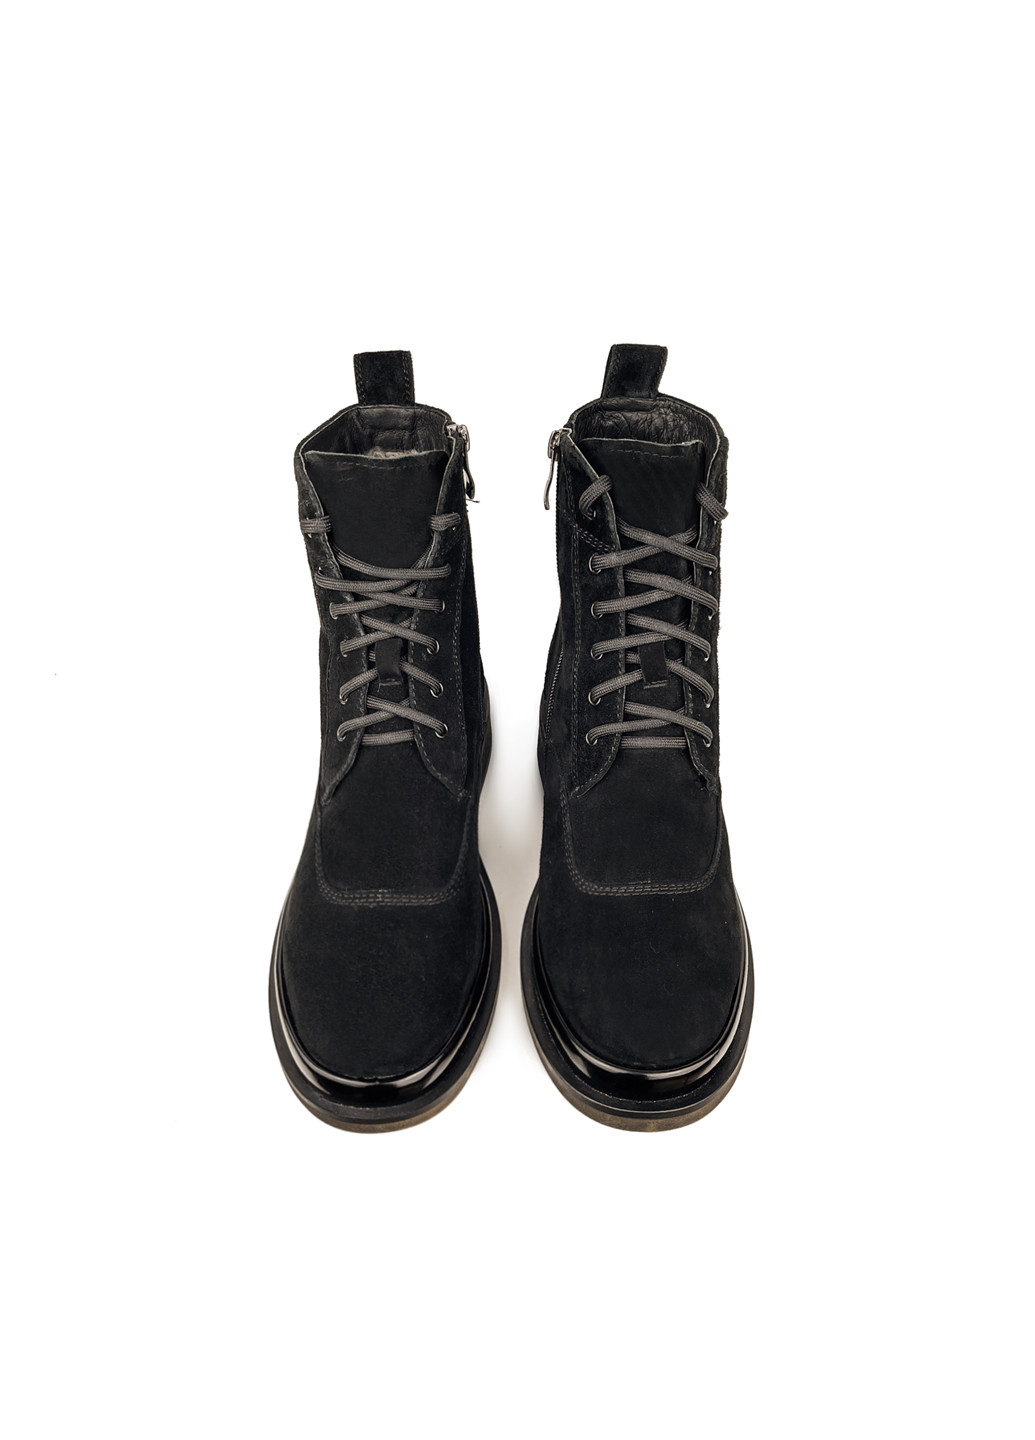 Зимние зимние ботинки с мехом женские черные замшевые Brocoli из натуральной замши